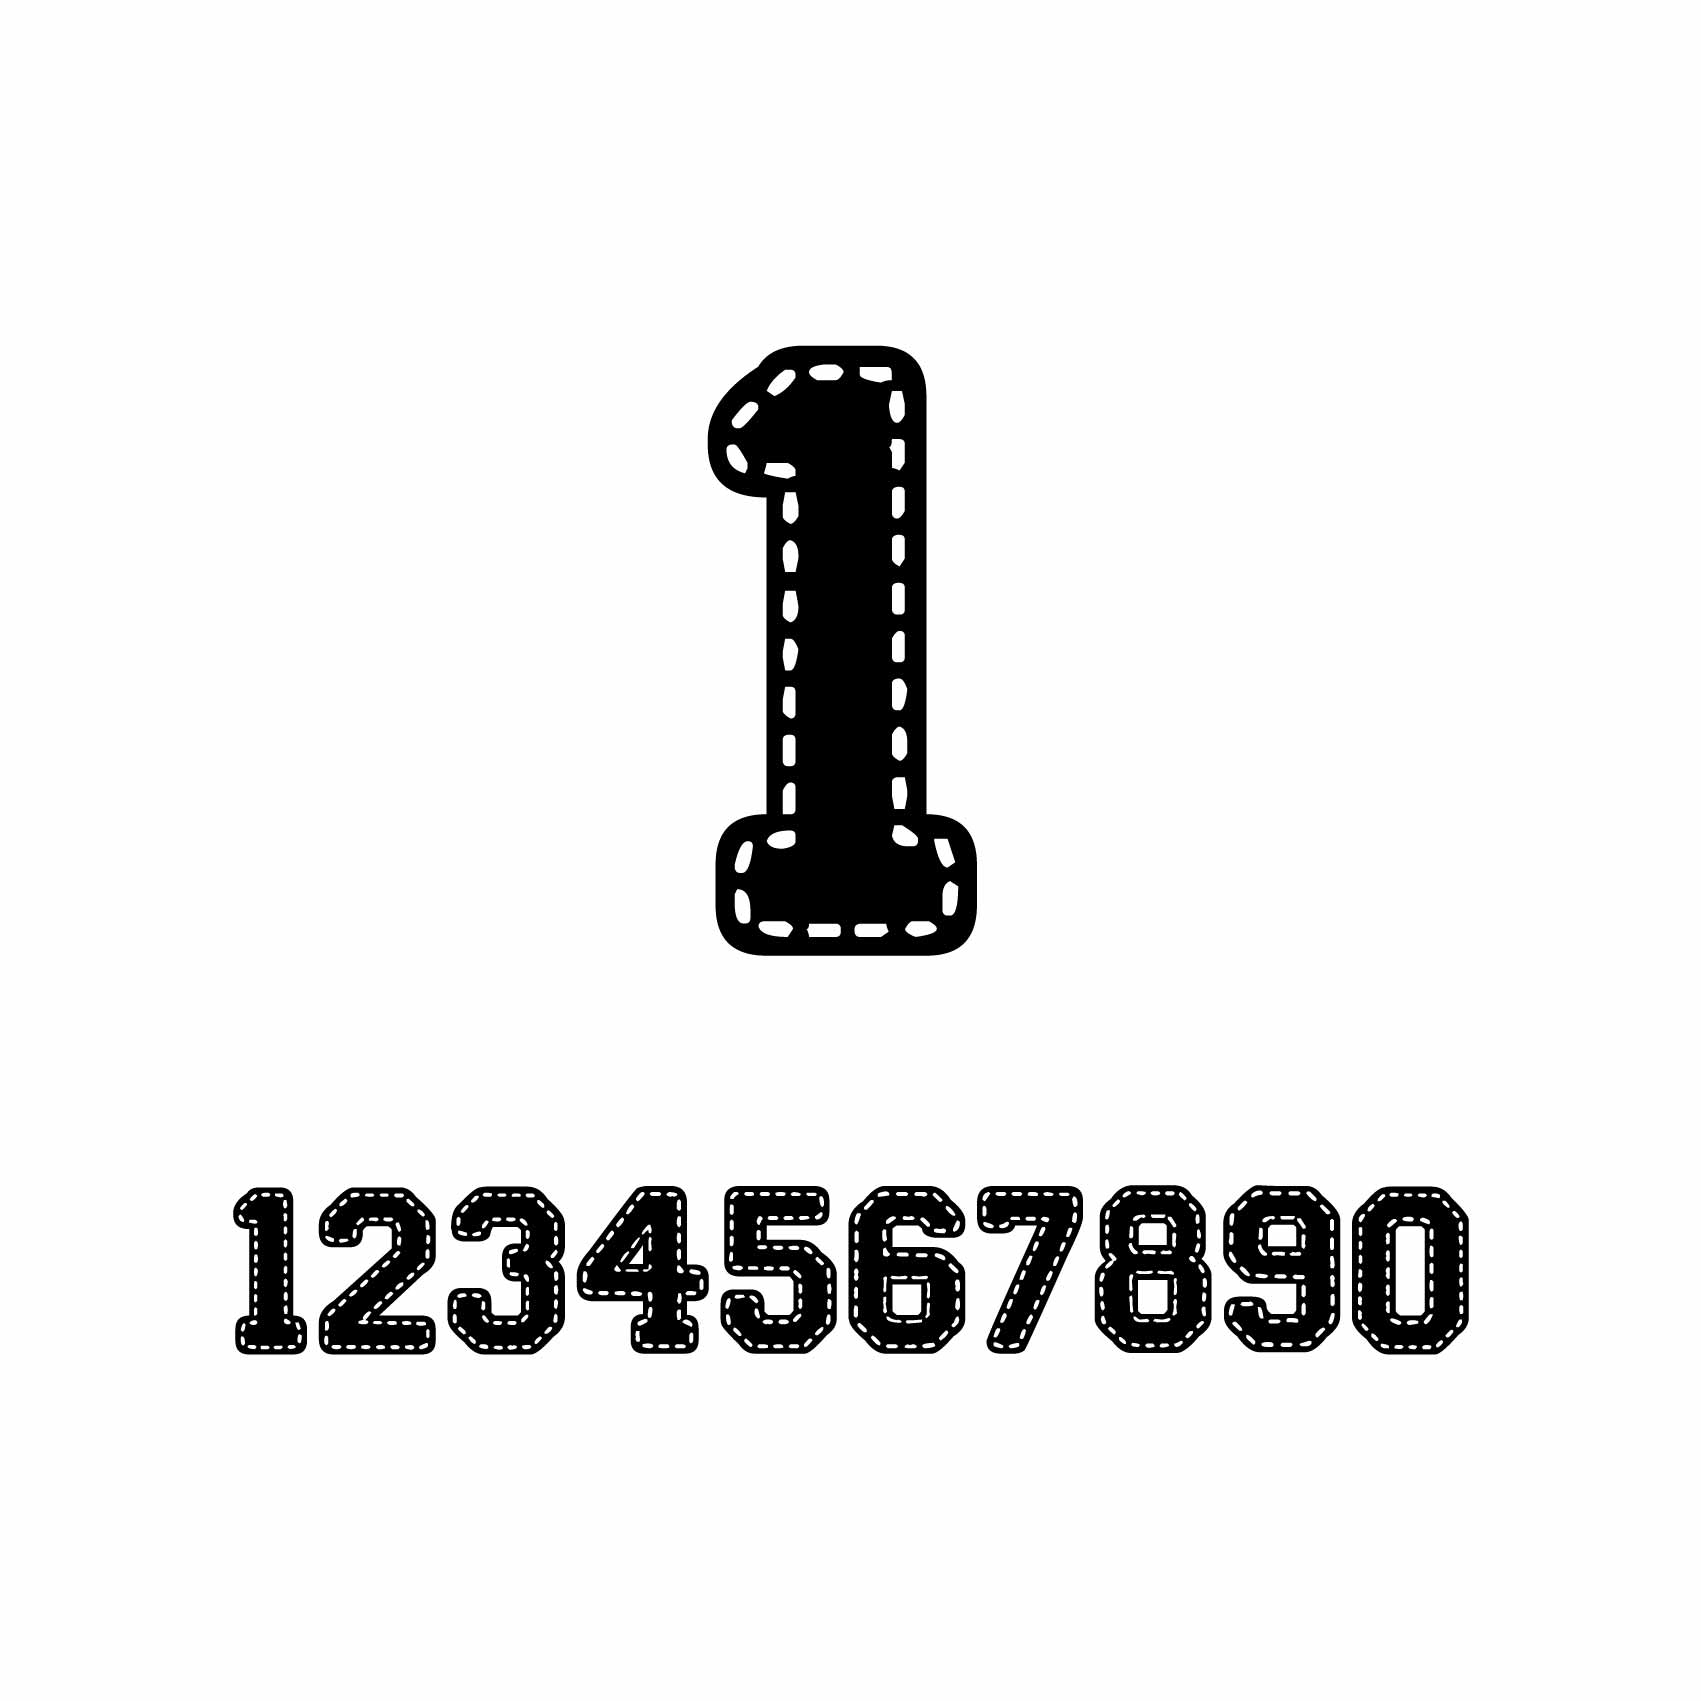 stickers-numéro-personnalisé-ref3numero-autocollant-numero-personnalise-sticker-chiffre-personnalisable-nombre-rallye-porte-1-2-3-4-5-6-7-8-9-0-lettrage